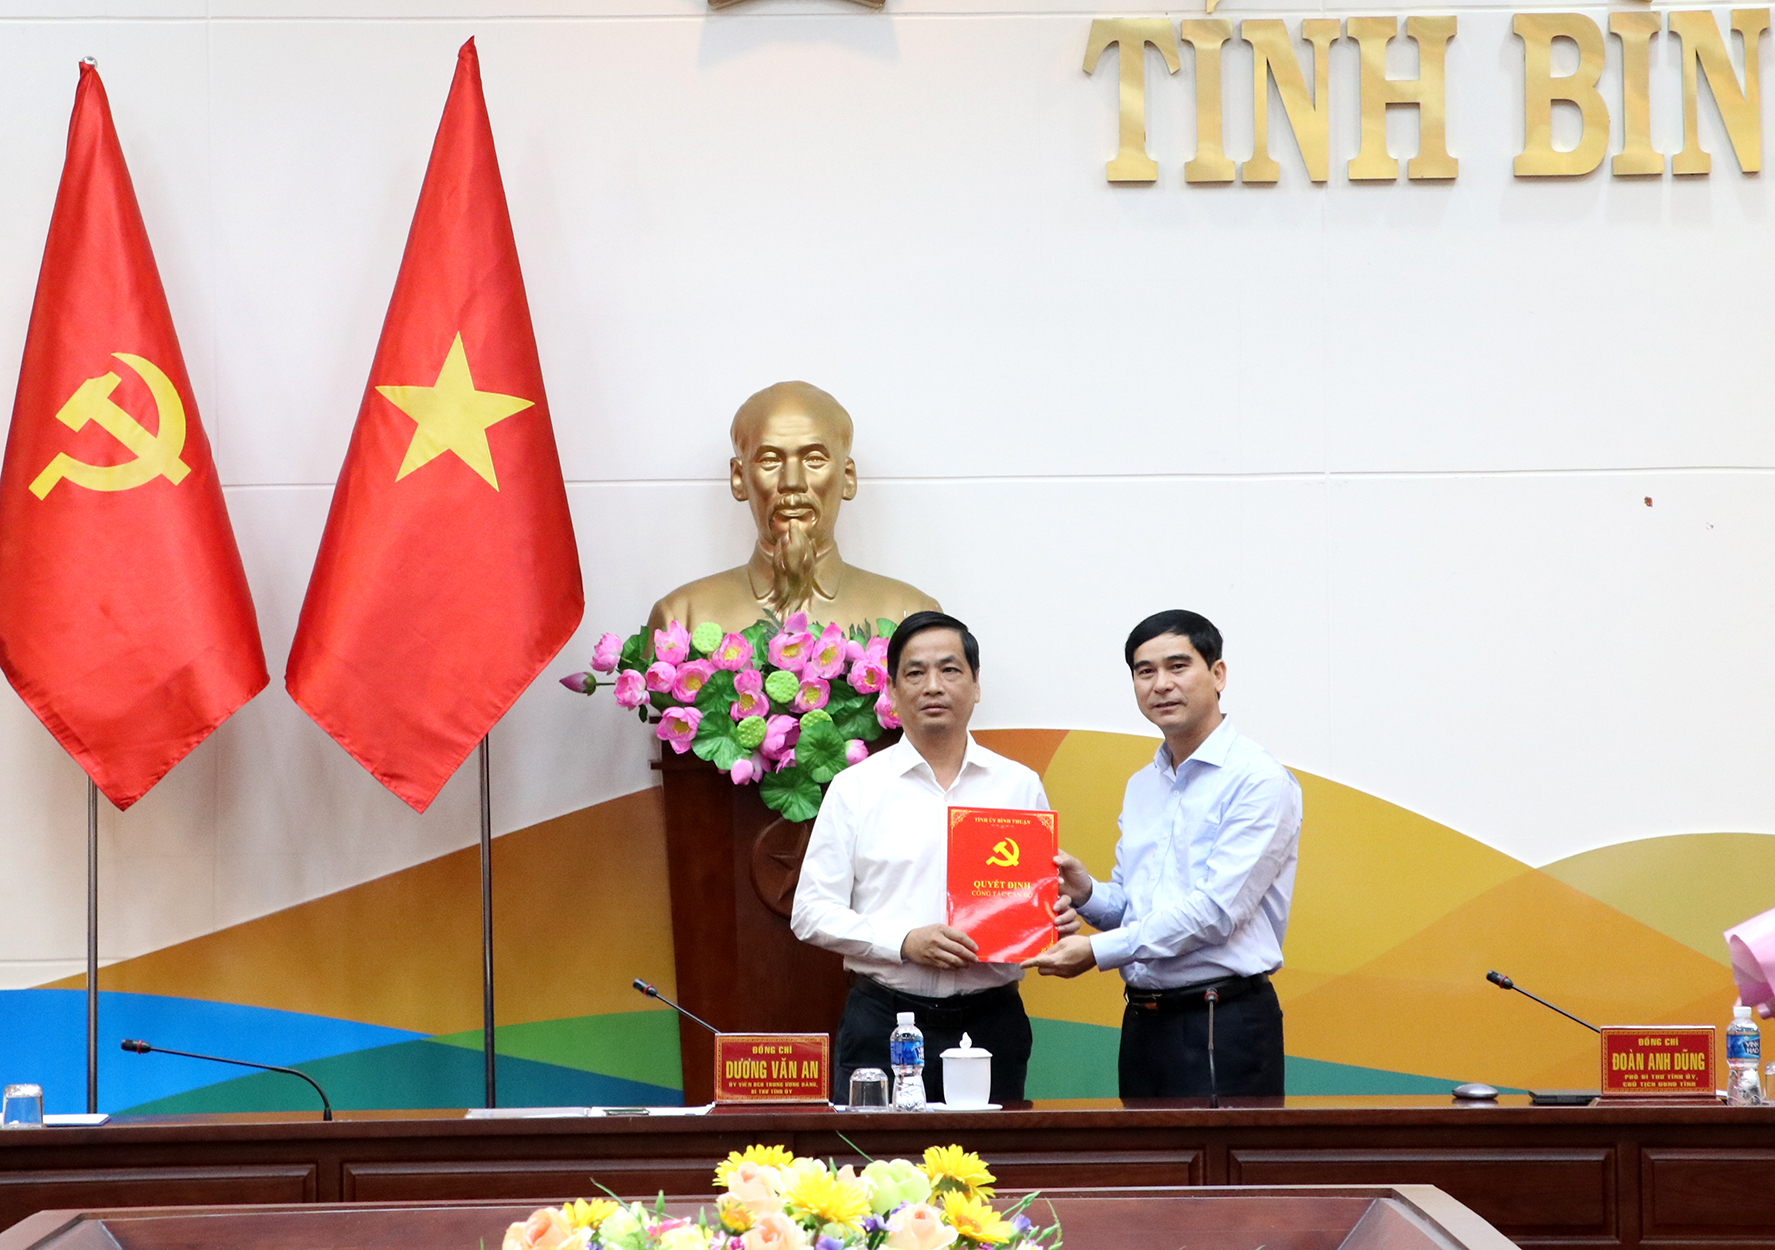 Bí thư Huyện ủy Hàm Tân được bổ nhiệm làm Trưởng Ban Tuyên giáo Tỉnh ủy Bình Thuận - Ảnh 1.